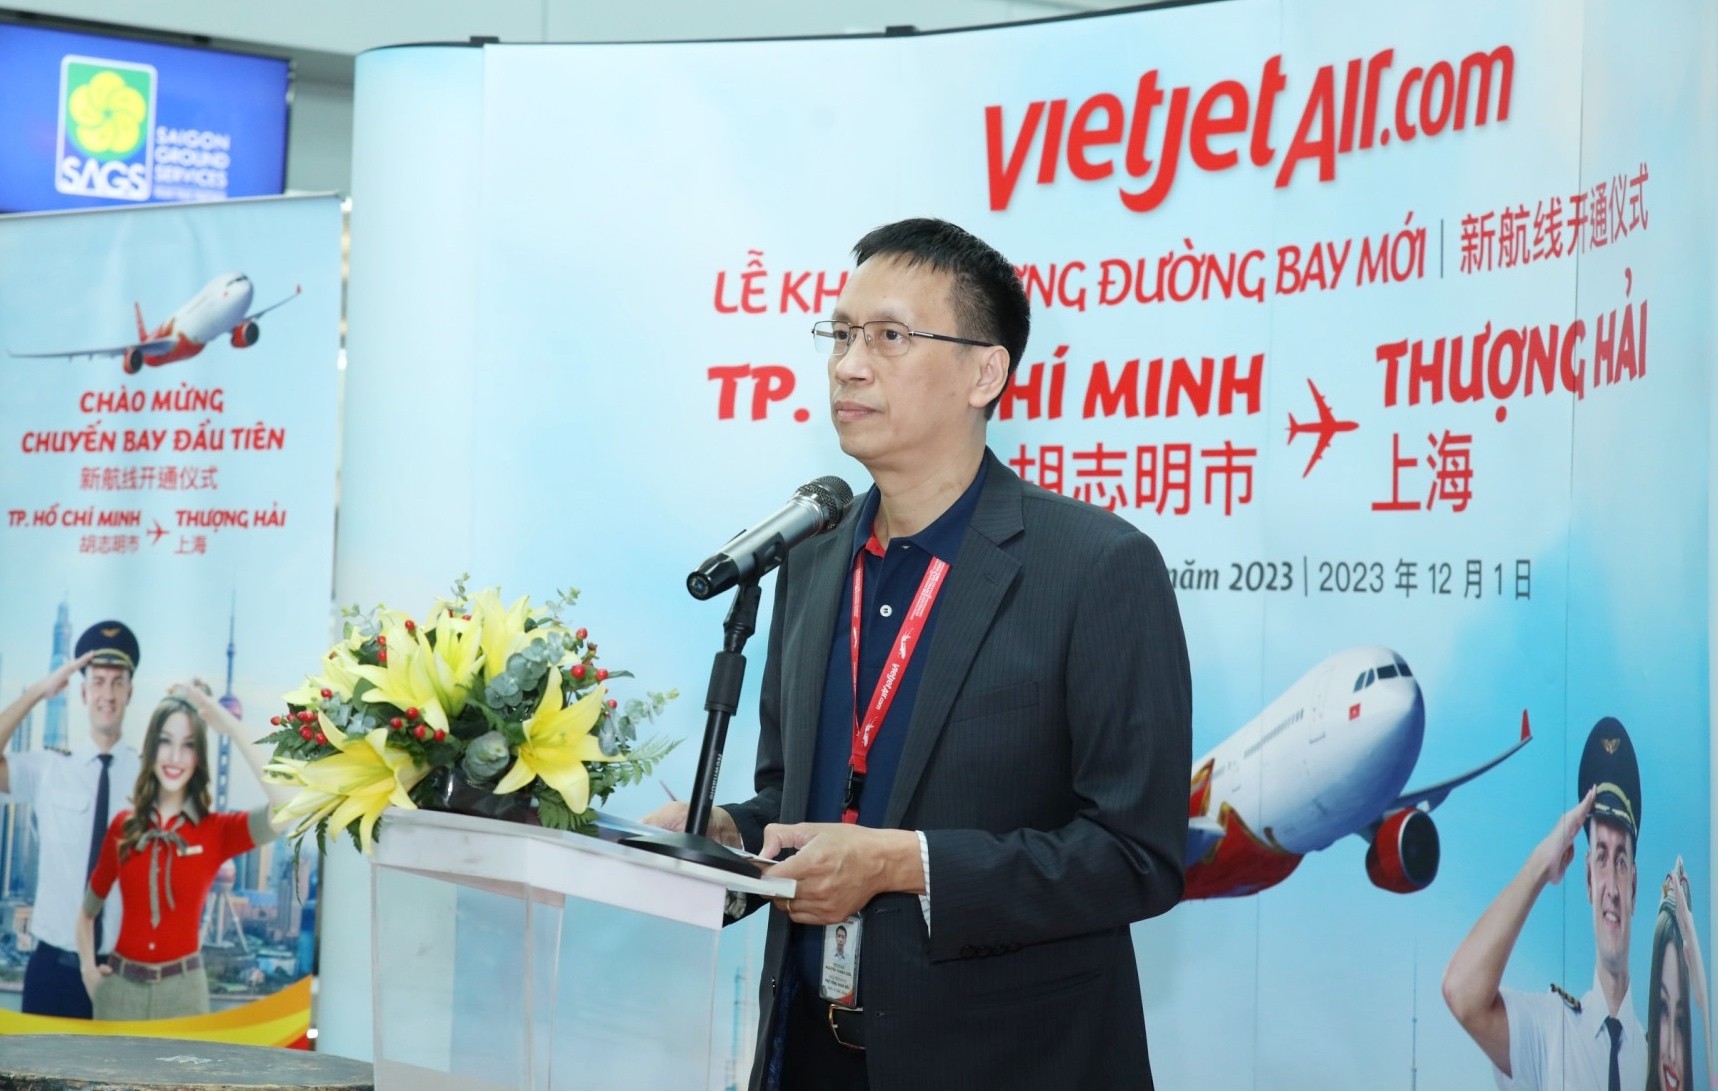 Tin vui: Vietjet vừa khai trương đường bay thẳng giữa Thượng Hải và TP. Hồ Chí Minh - Ảnh 1.